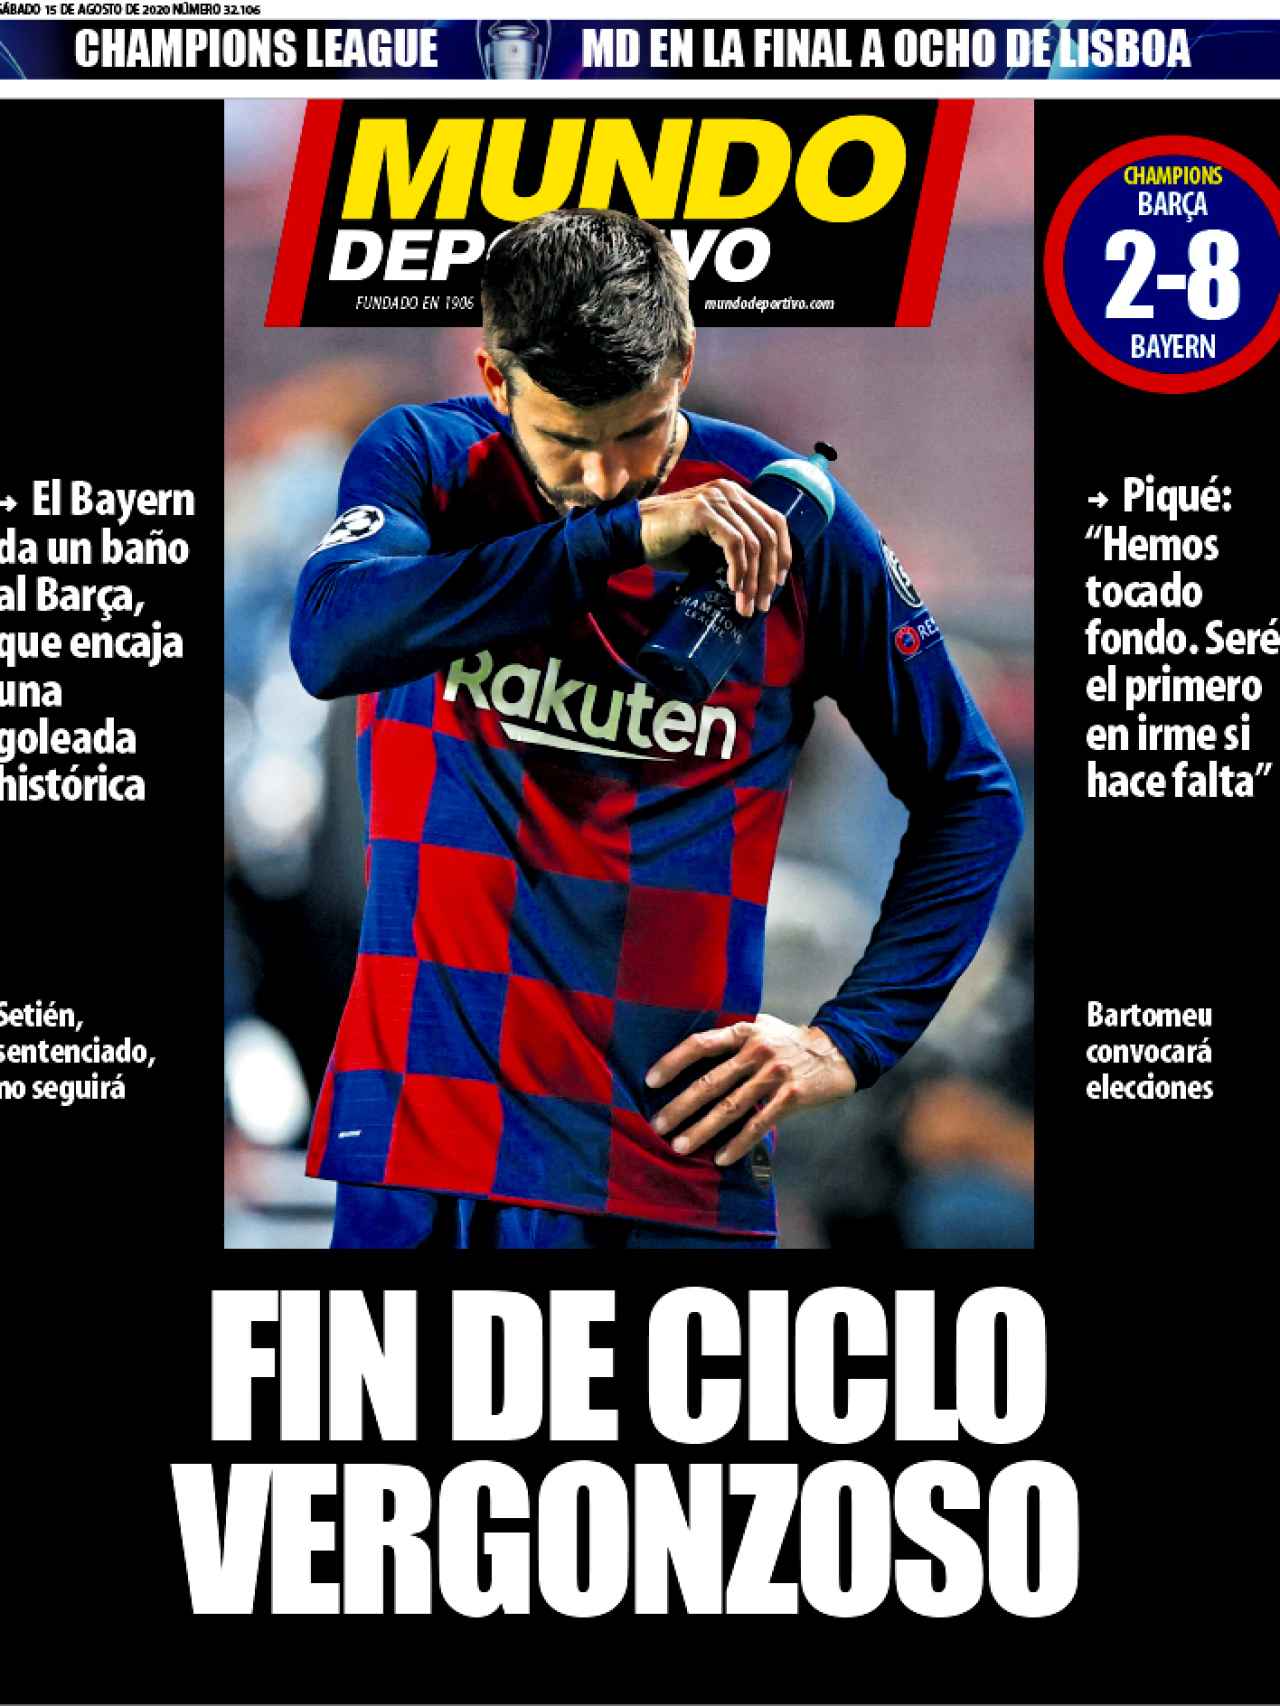 La portada del diario Mundo Deportivo (15/08/2020)